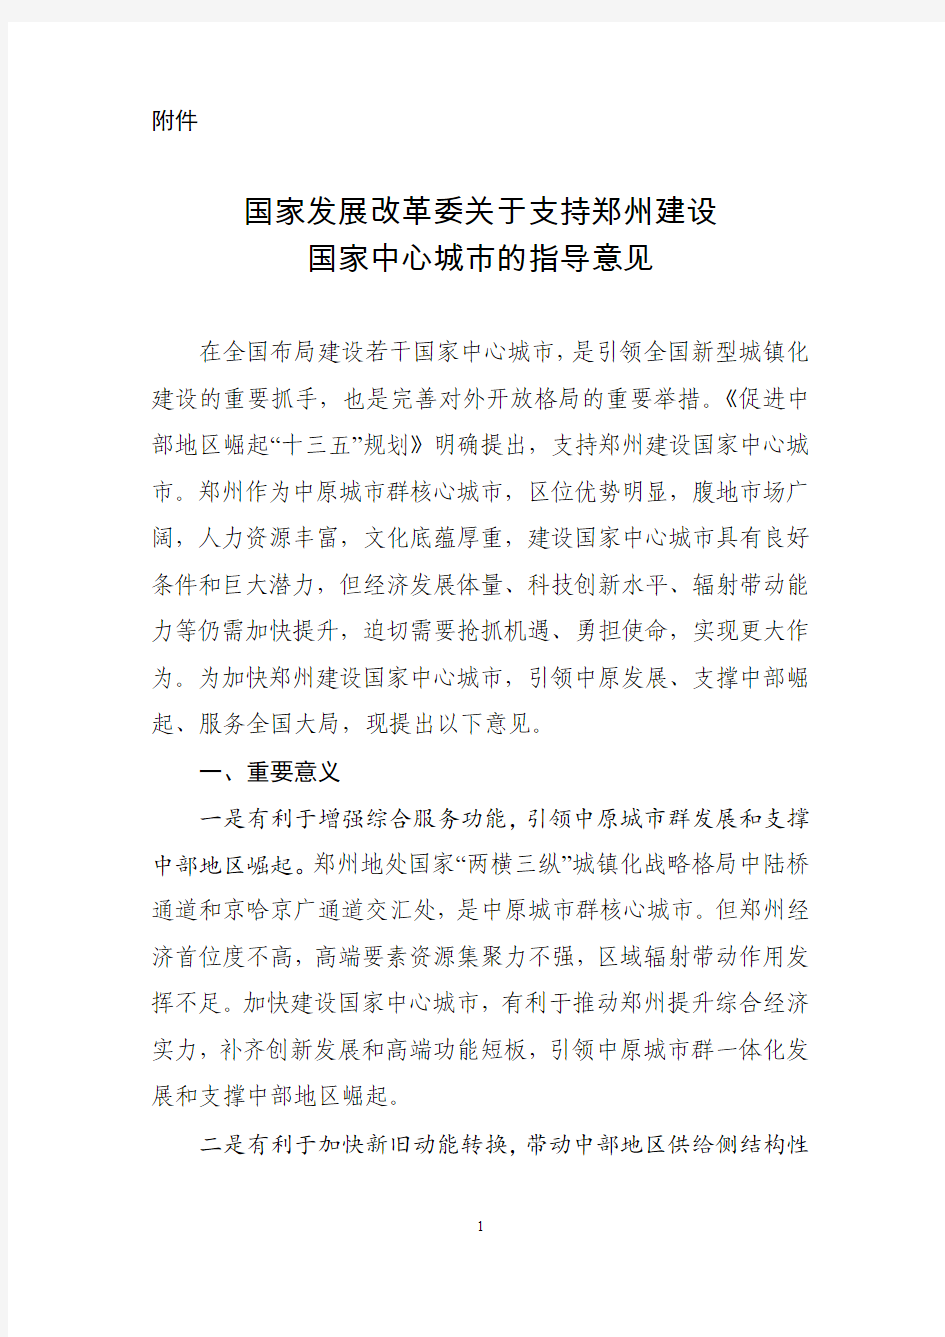 国家发展改革委关于支持郑州建设国家中心城市的指导意见》--中国市场经济研究院